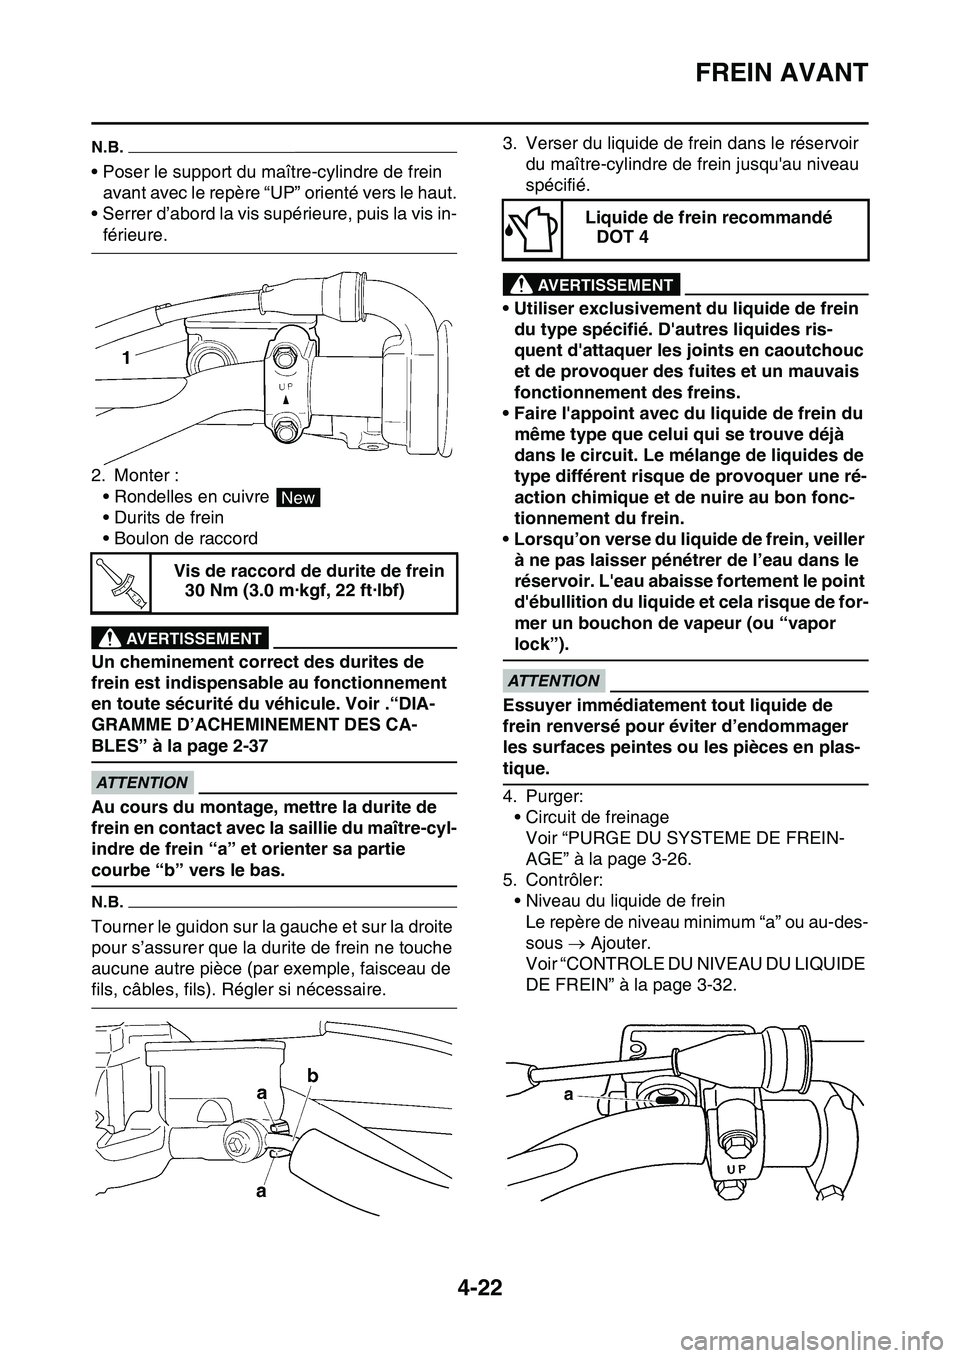 YAMAHA YZ450F 2014  Notices Demploi (in French) FREIN AVANT
4-22
N.B.
• Poser le support du maître-cylindre de frein 
avant avec le repère “UP” orienté vers le haut.
• Serrer d’abord la vis supérieure, puis la vis in-
férieure.
2. Mo